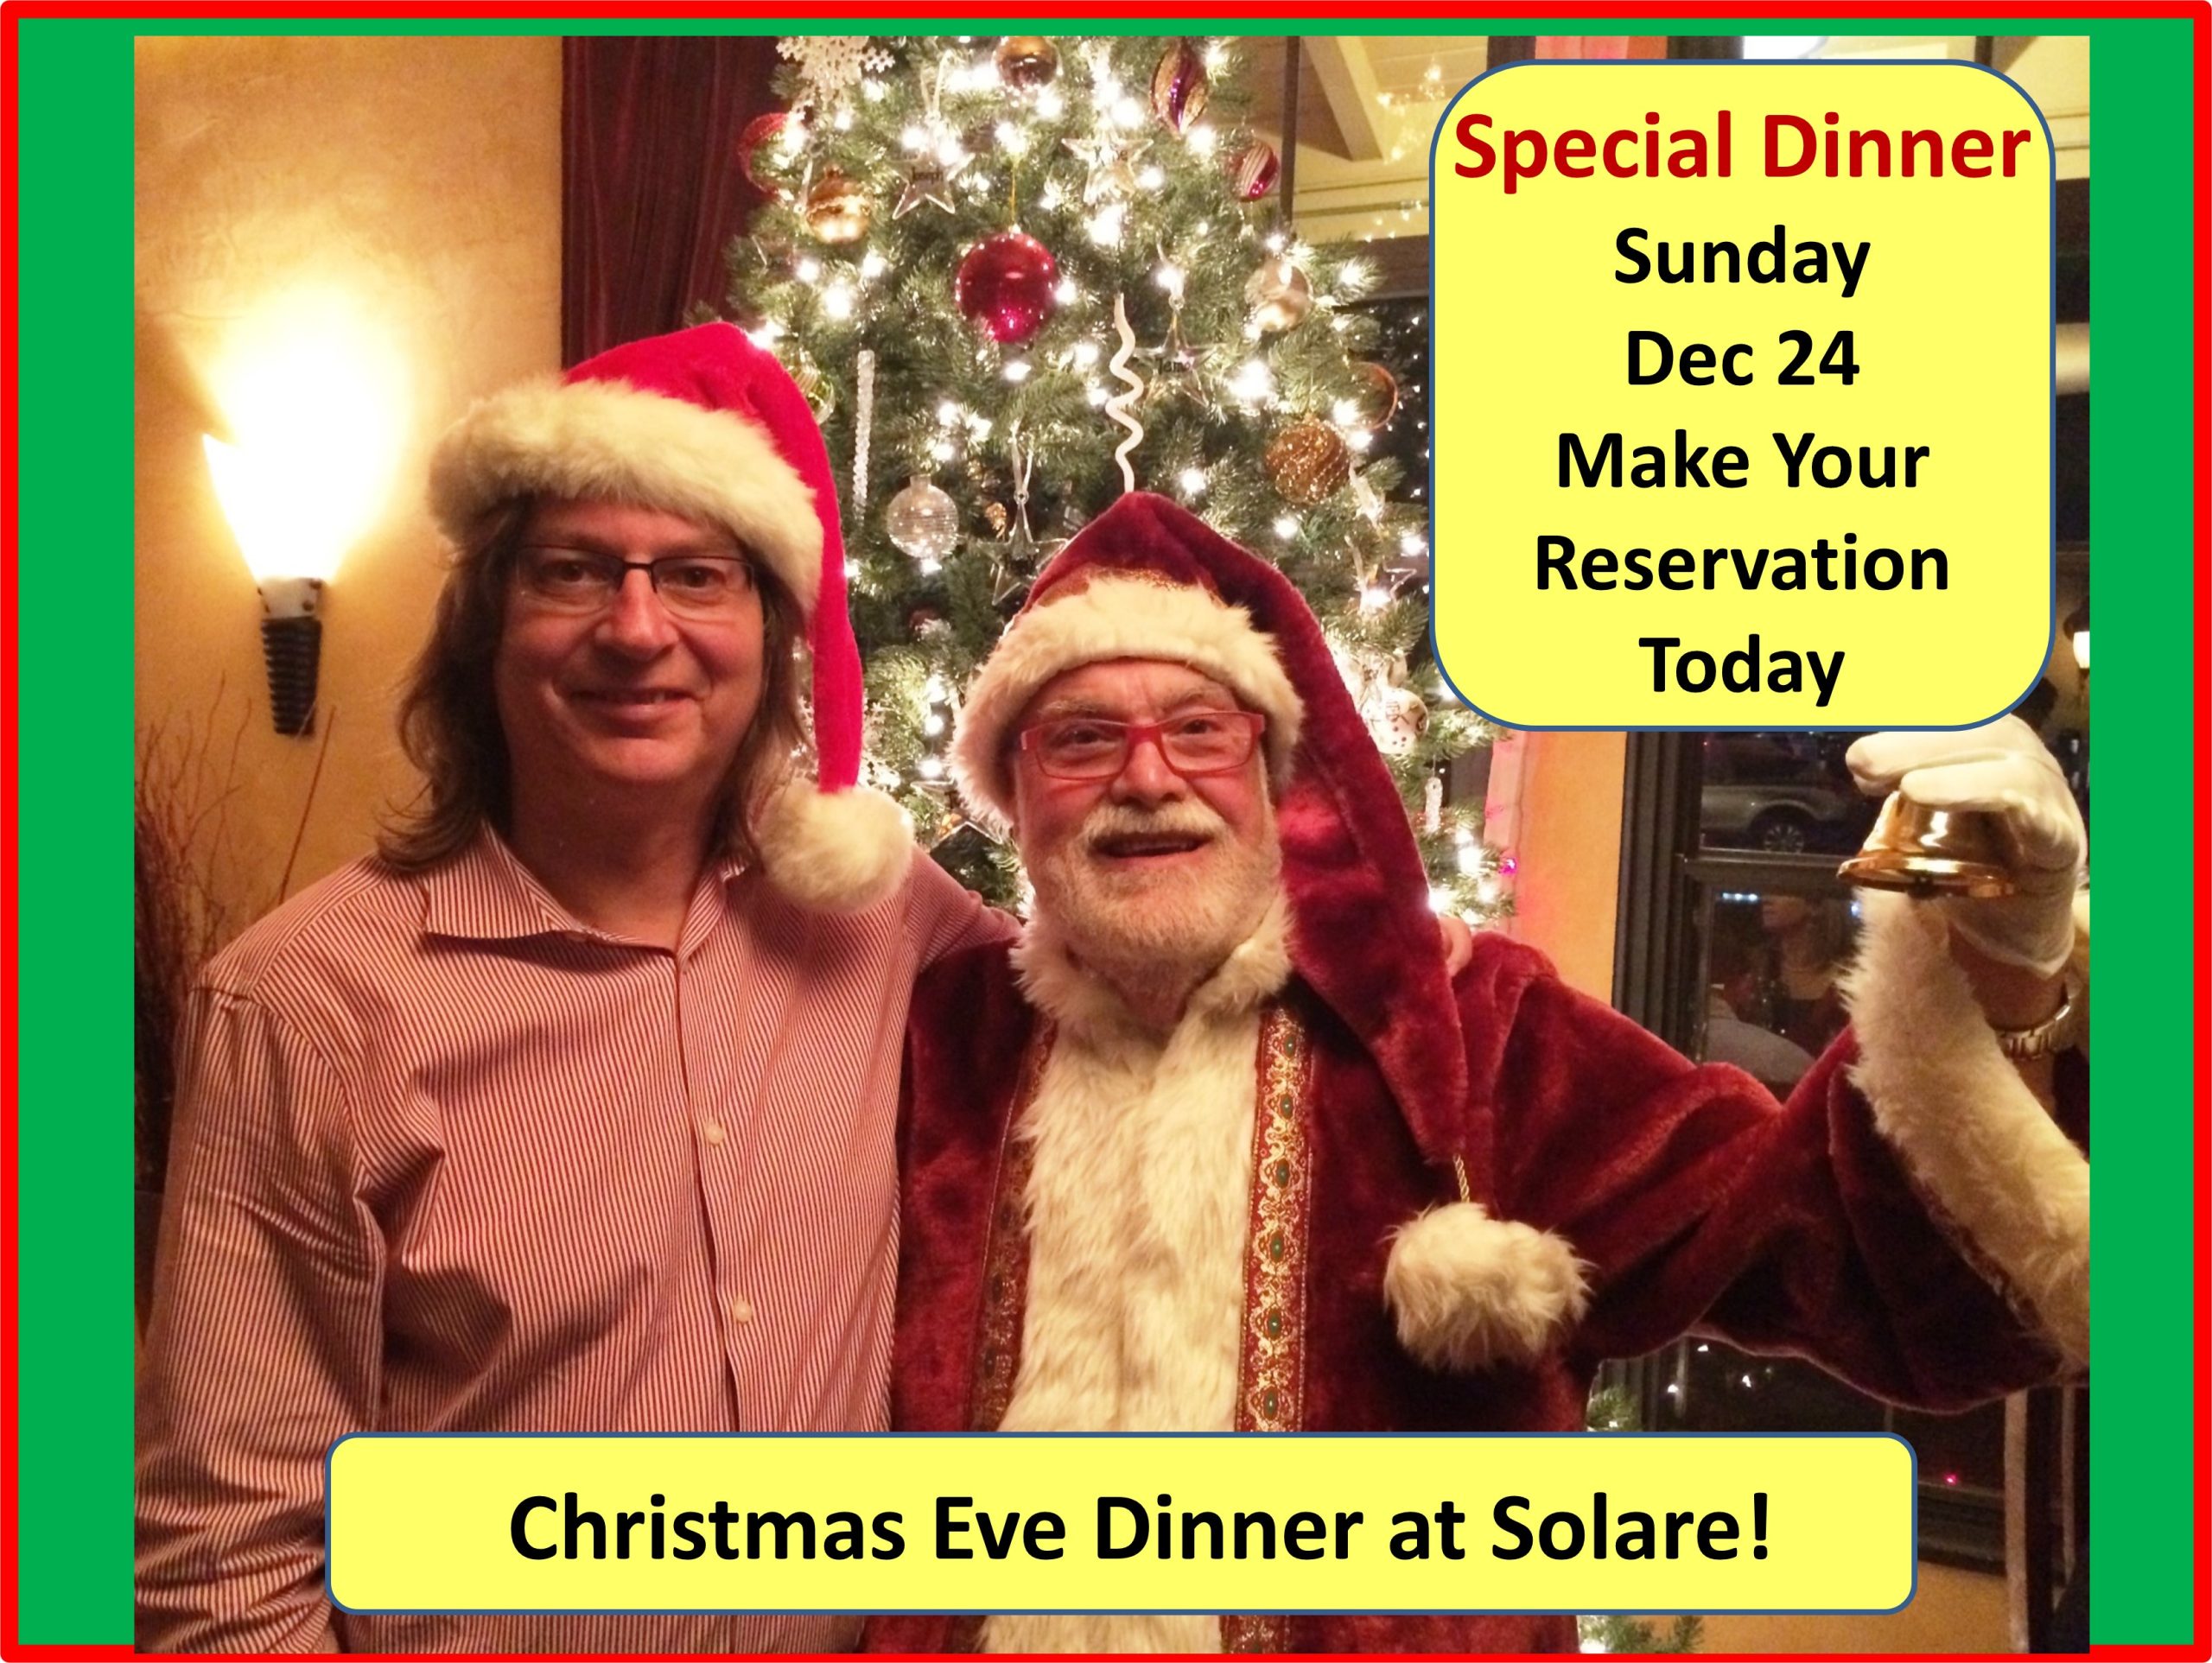 <a id="Solare-Christmas-Eve-Dinner"></a>Solare Christmas Eve Dinner